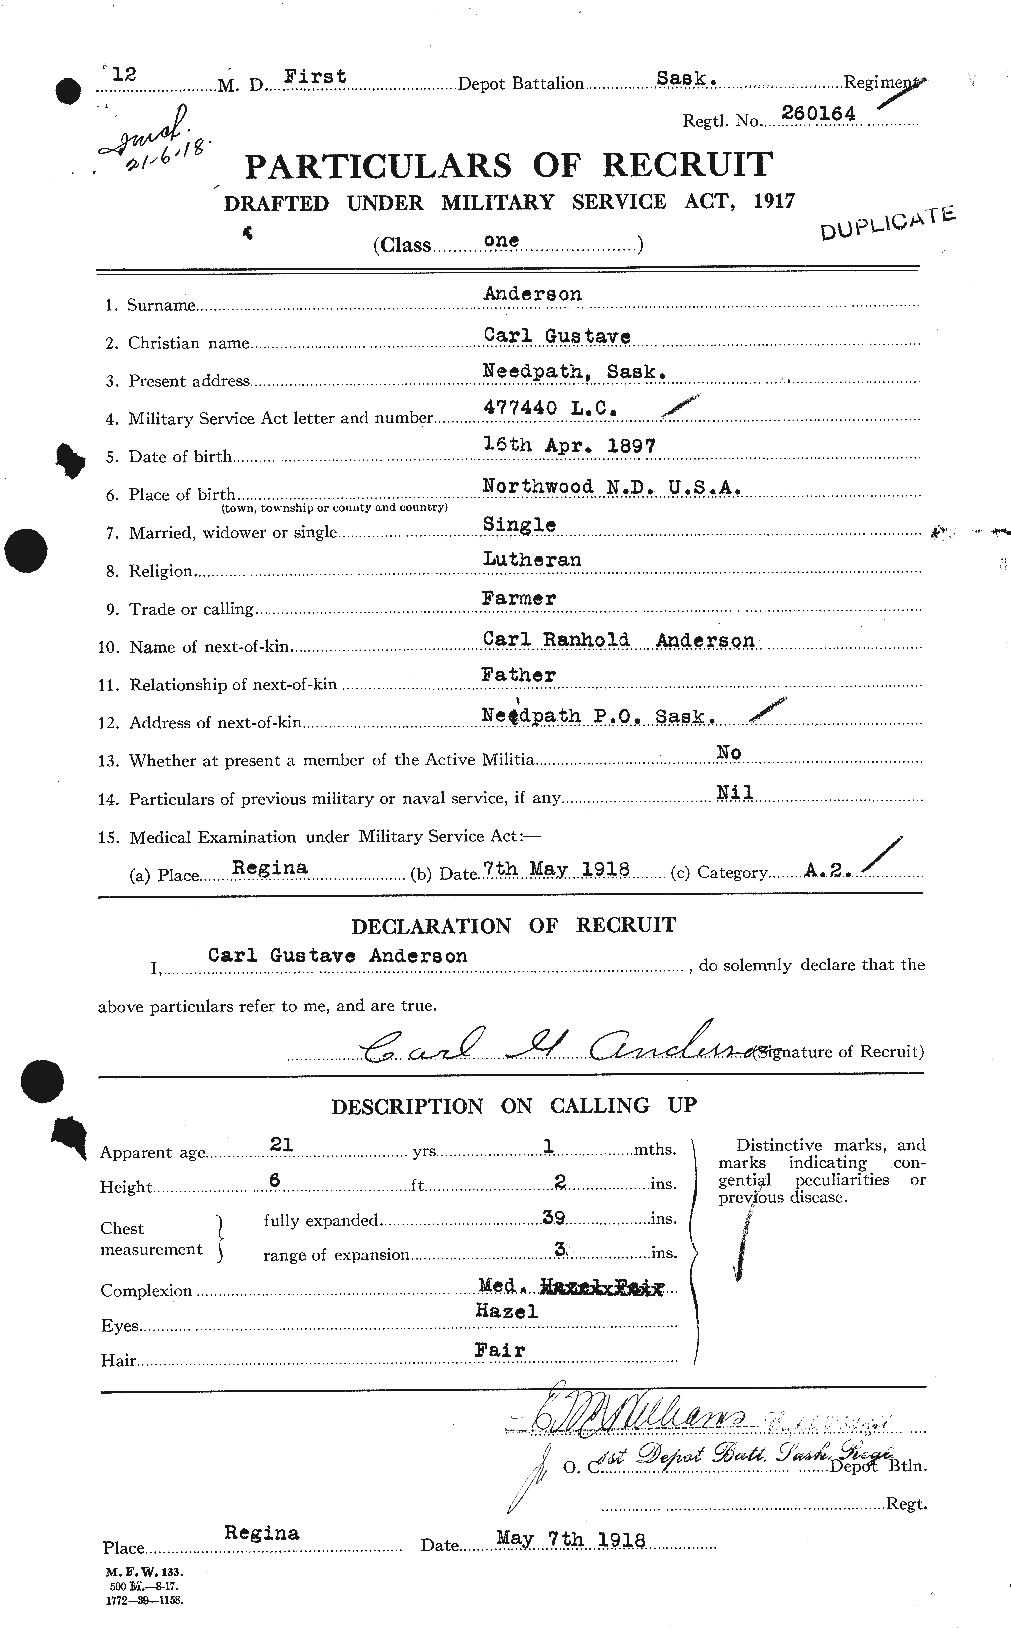 Dossiers du Personnel de la Première Guerre mondiale - CEC 209279a